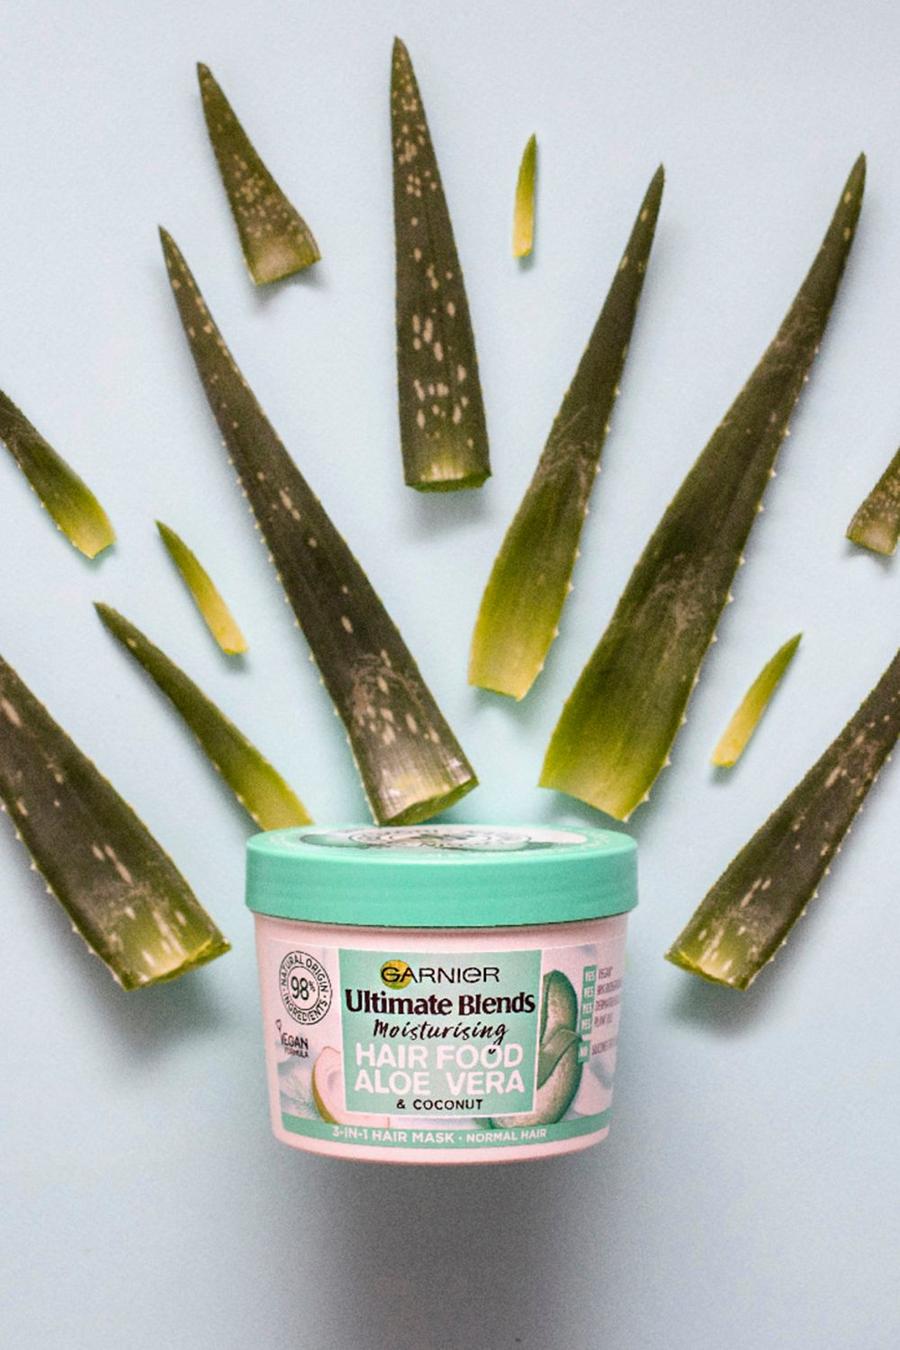 Garnier - Masque pour les cheveux à l’aloe vera - Ultimate Blends 390ml, Vert green